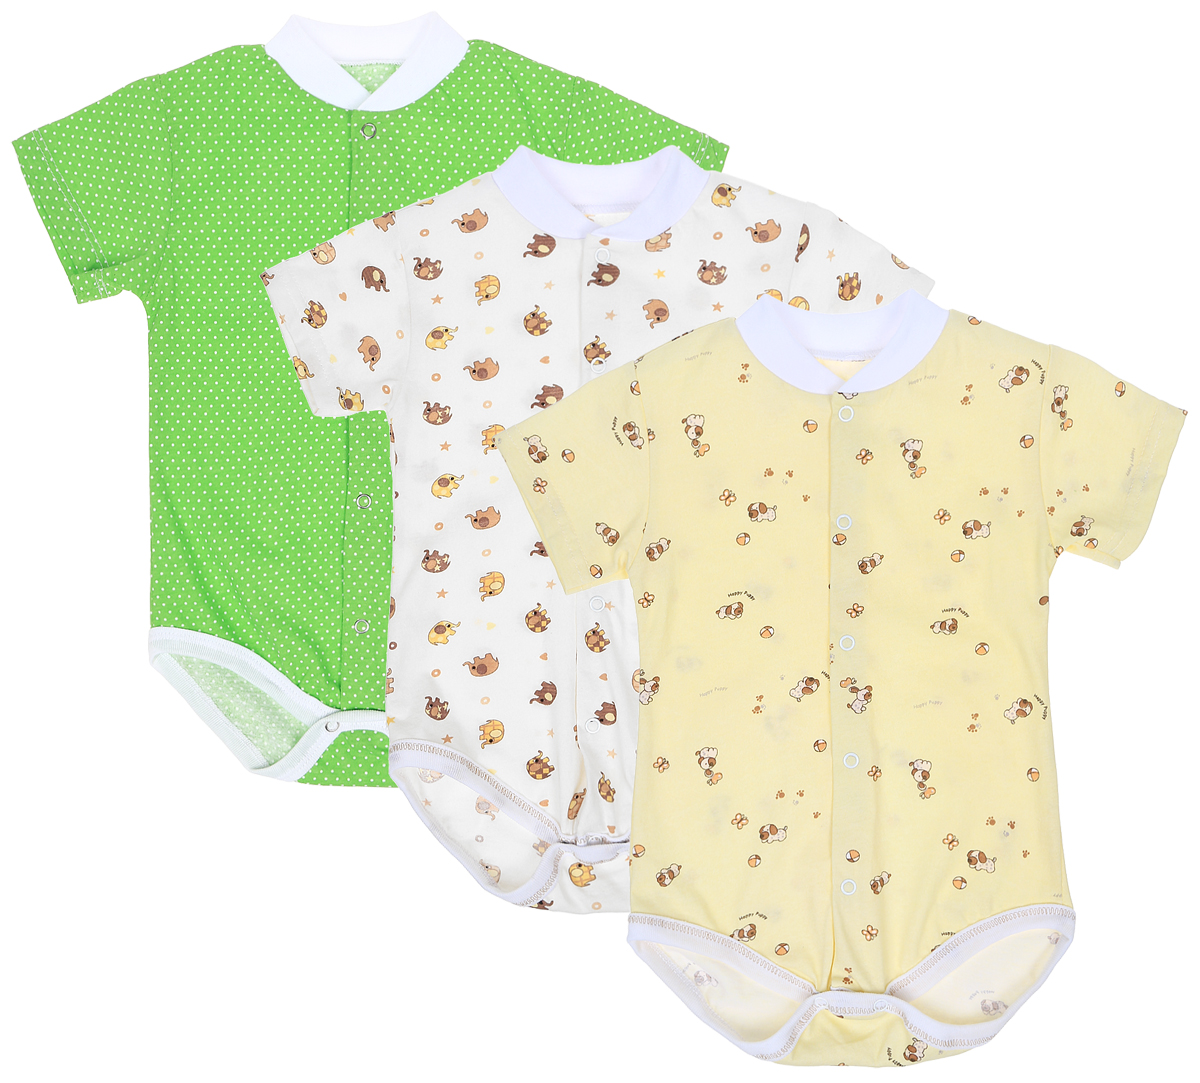 Боди-футболка детское Фреш Стайл, цвет: салатовый, желтый, белый, 3 шт. 10-325м. Размер 86, 18 месяцев